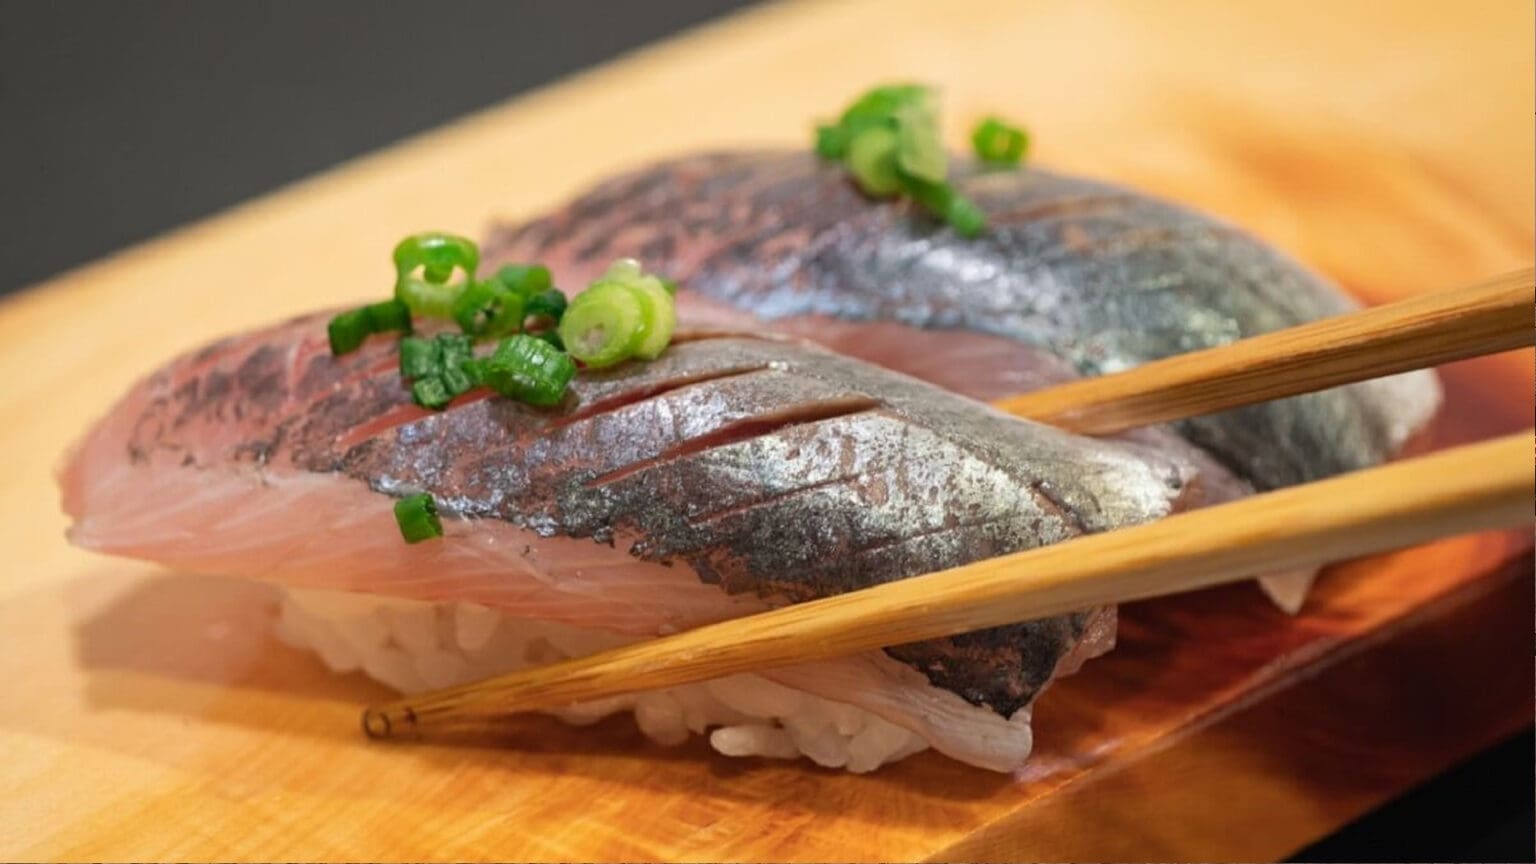 O Festival Gastronómico que Celebra a Paixão pelo Sushi e o Pescado Local